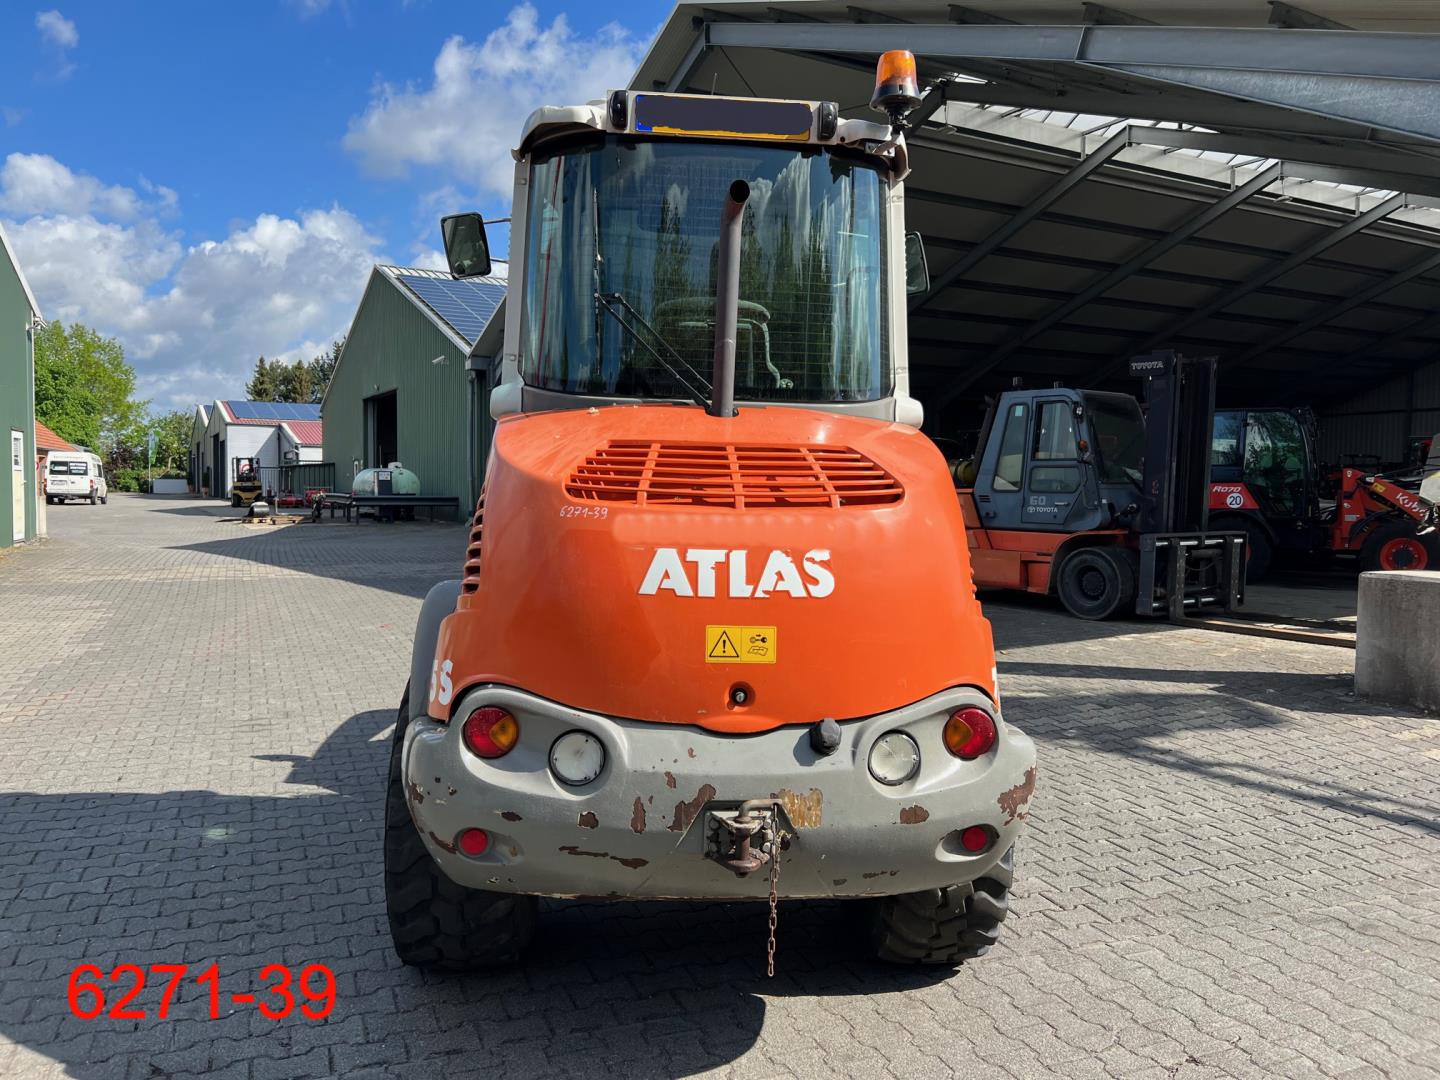 Atlas-AR 75 s-Radlader-www.heftruckcentrumemmen.nl